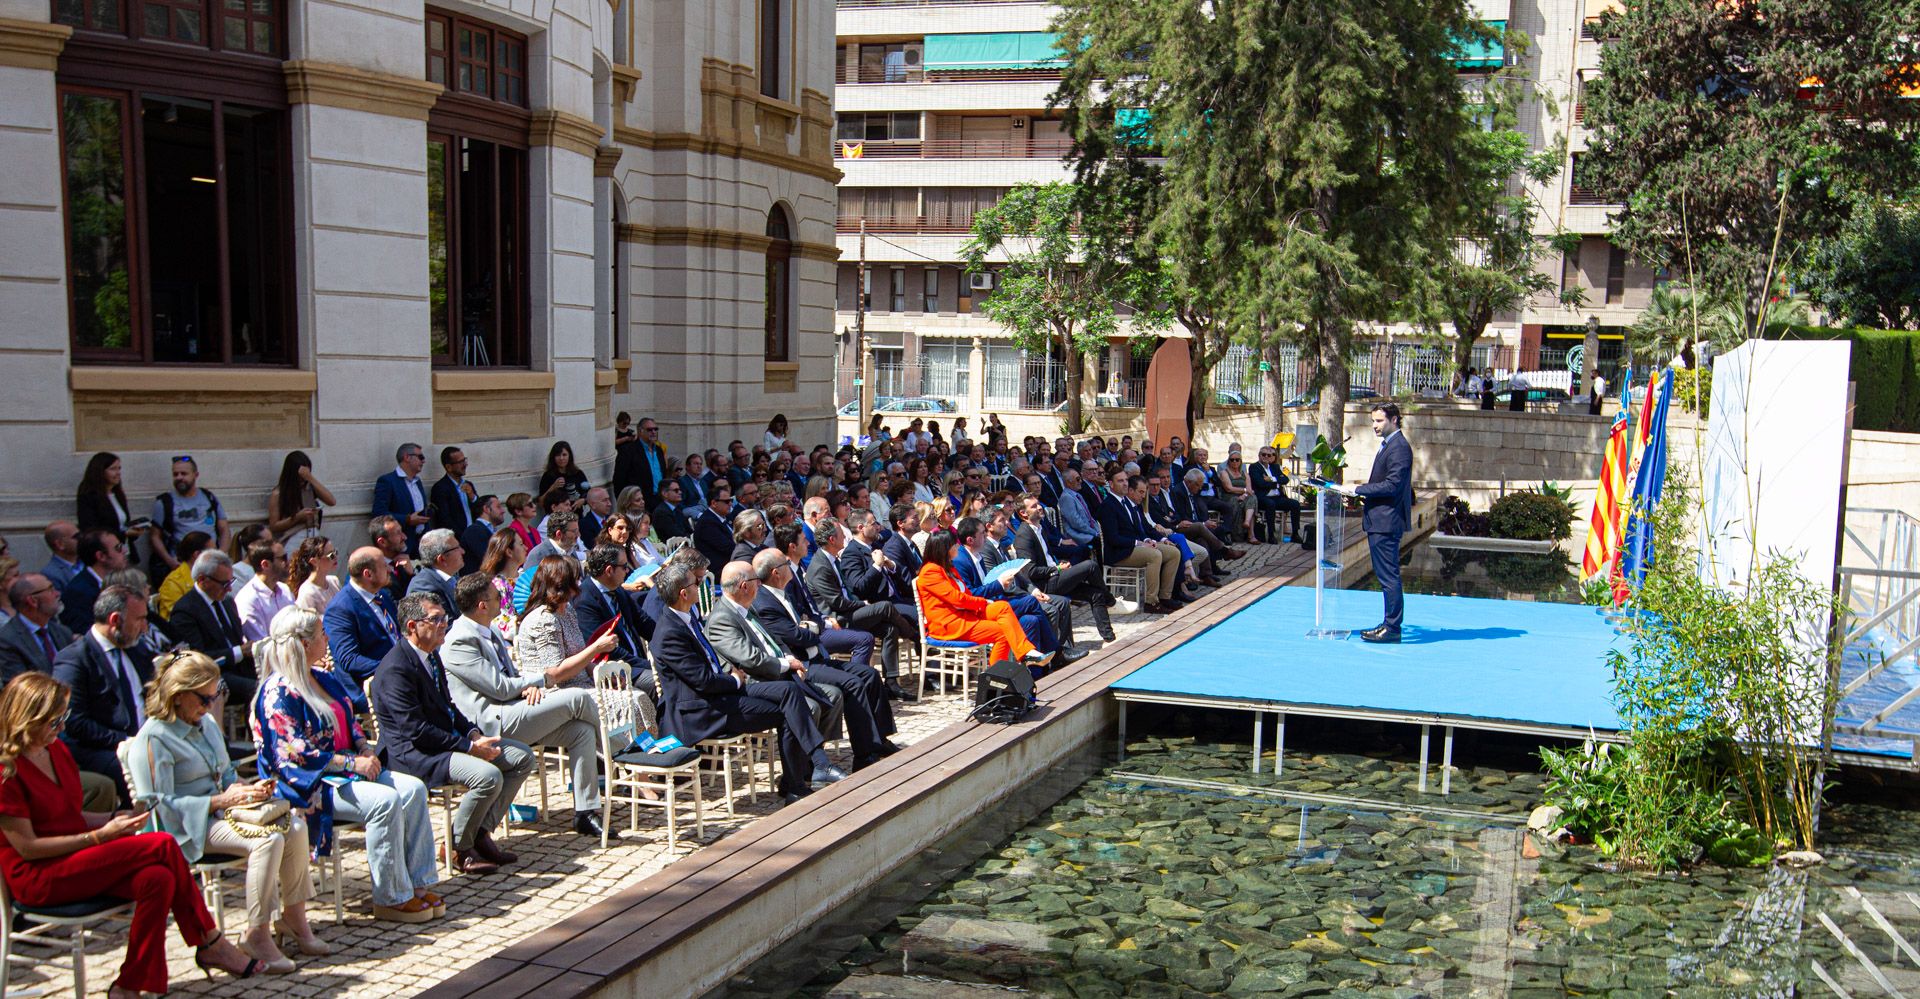 La Diputación celebra su 200 aniversario